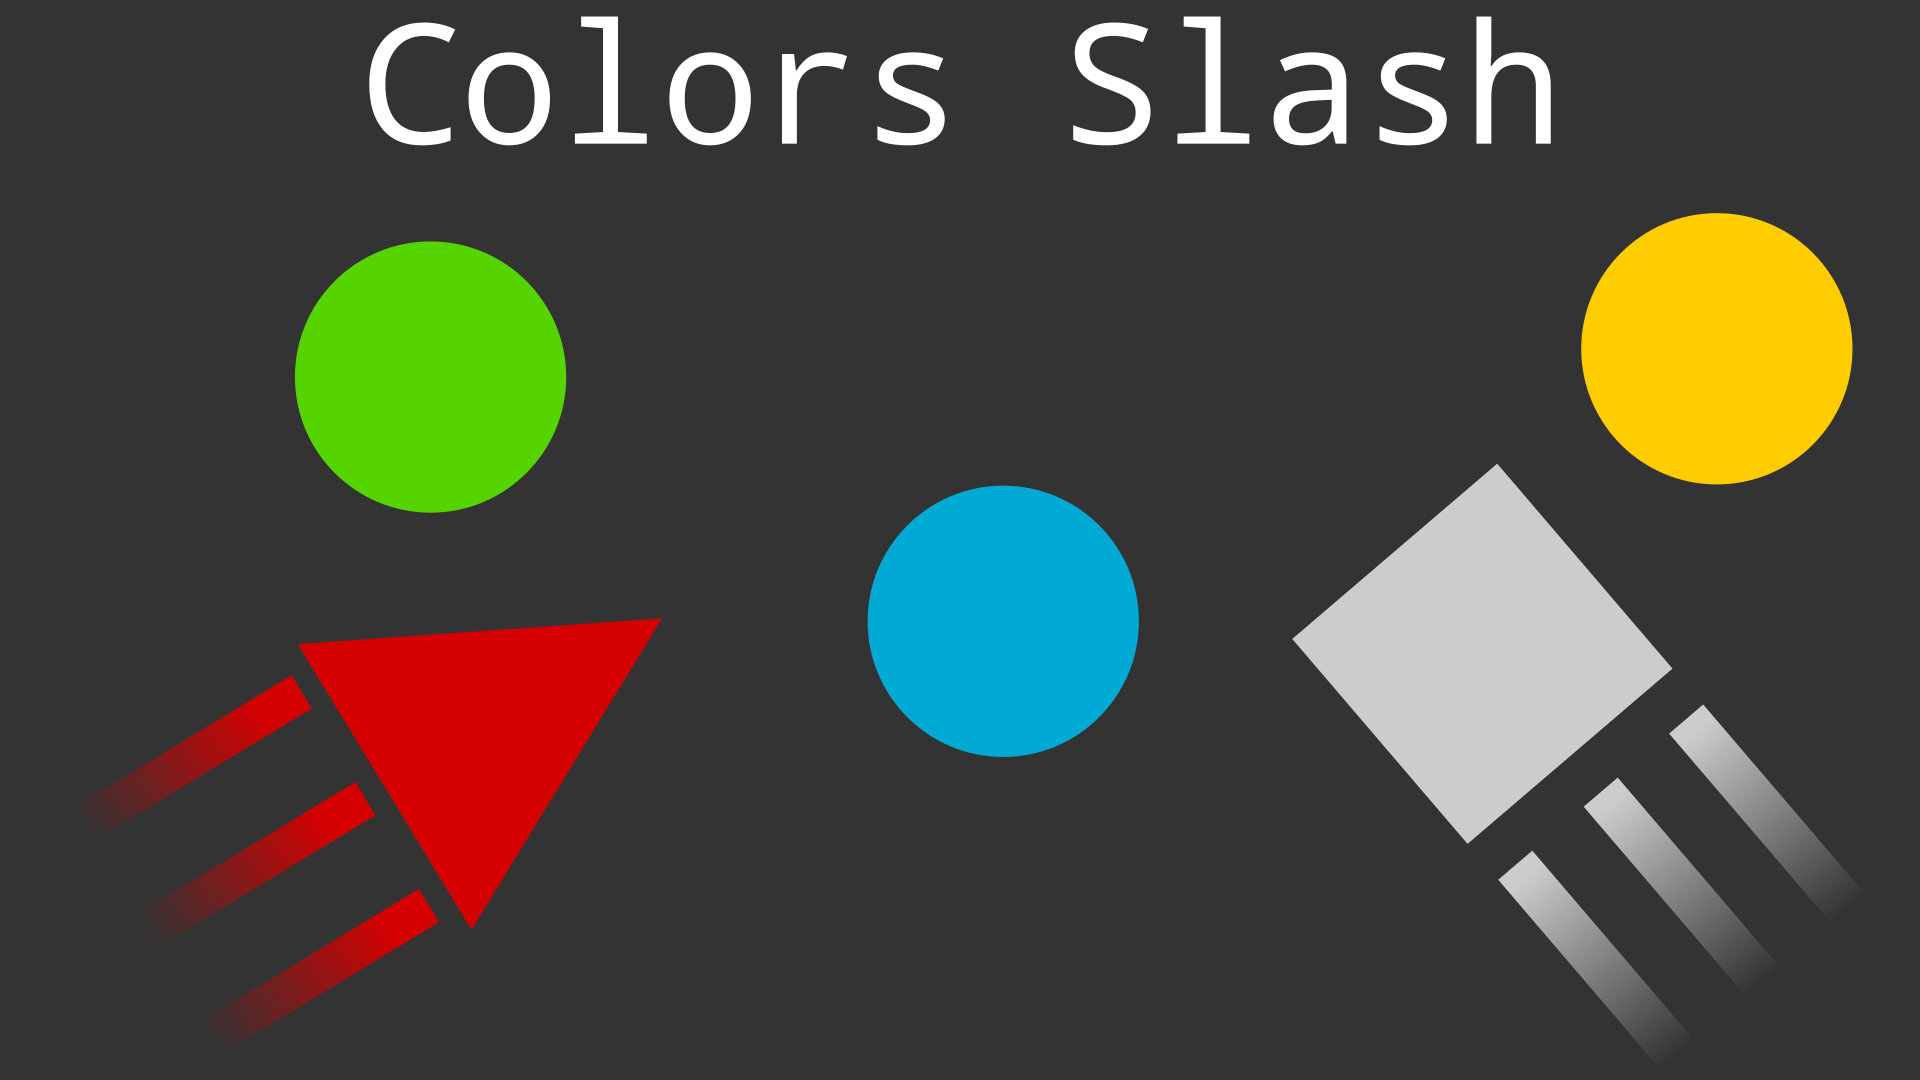 Colors Slash